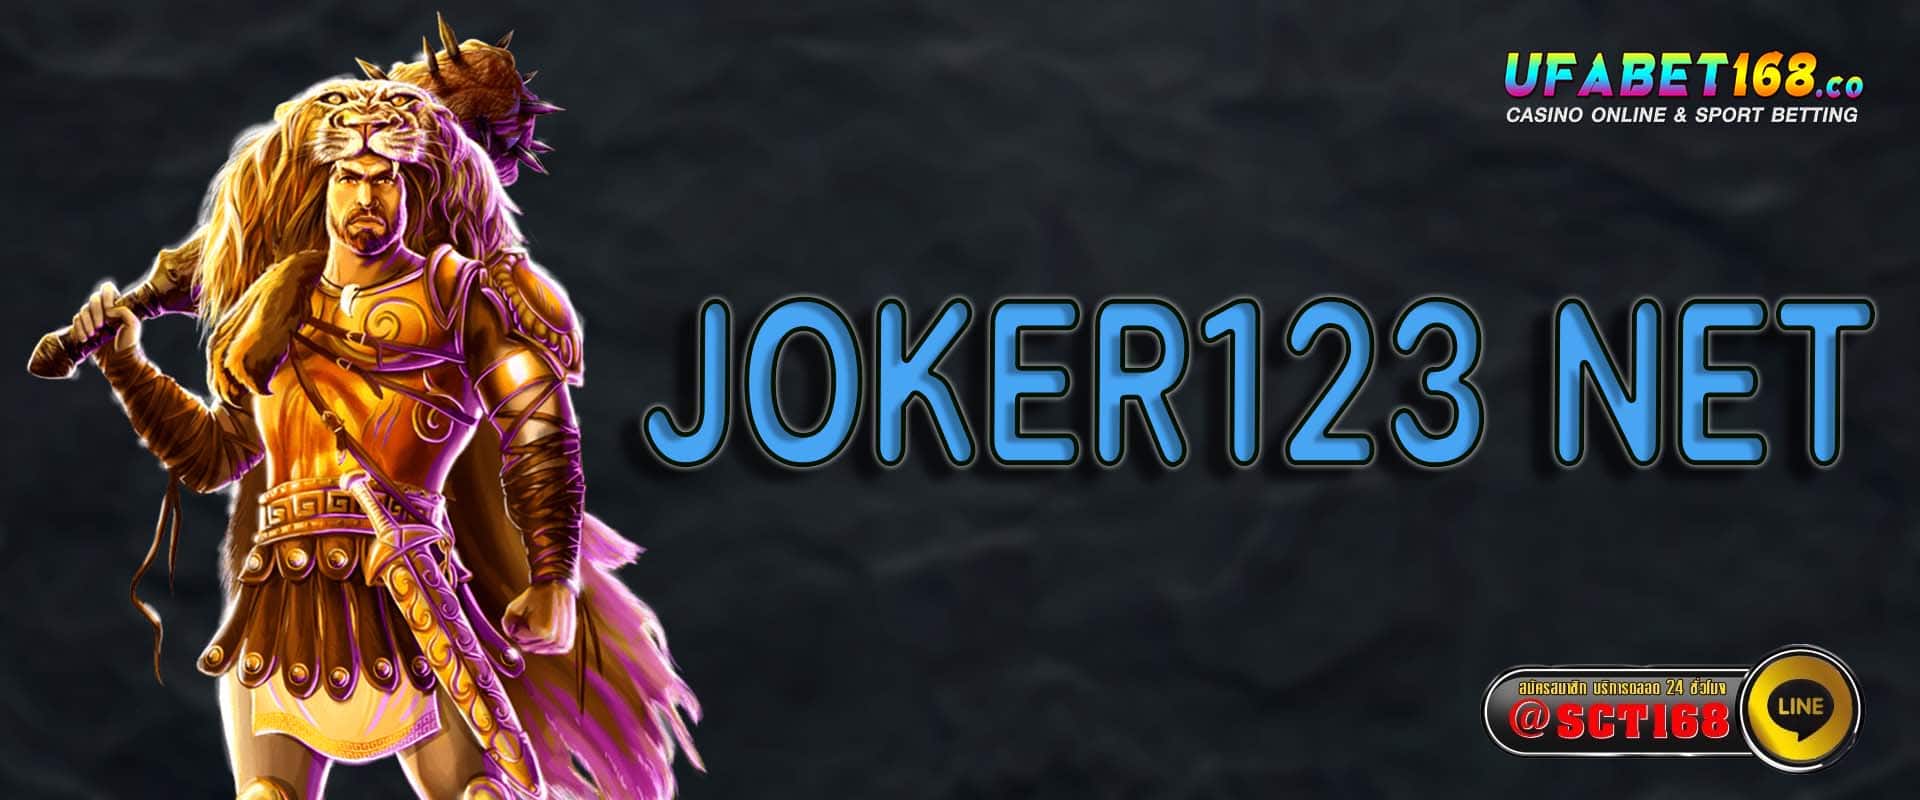 joker123 net เว็บตรง